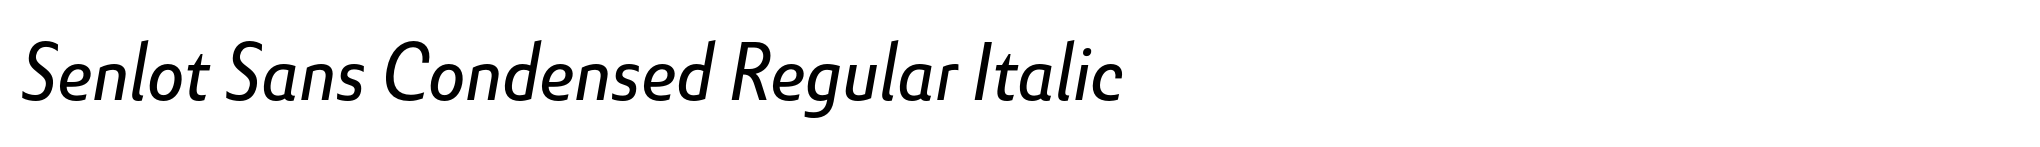 Senlot Sans Condensed Regular Italic image